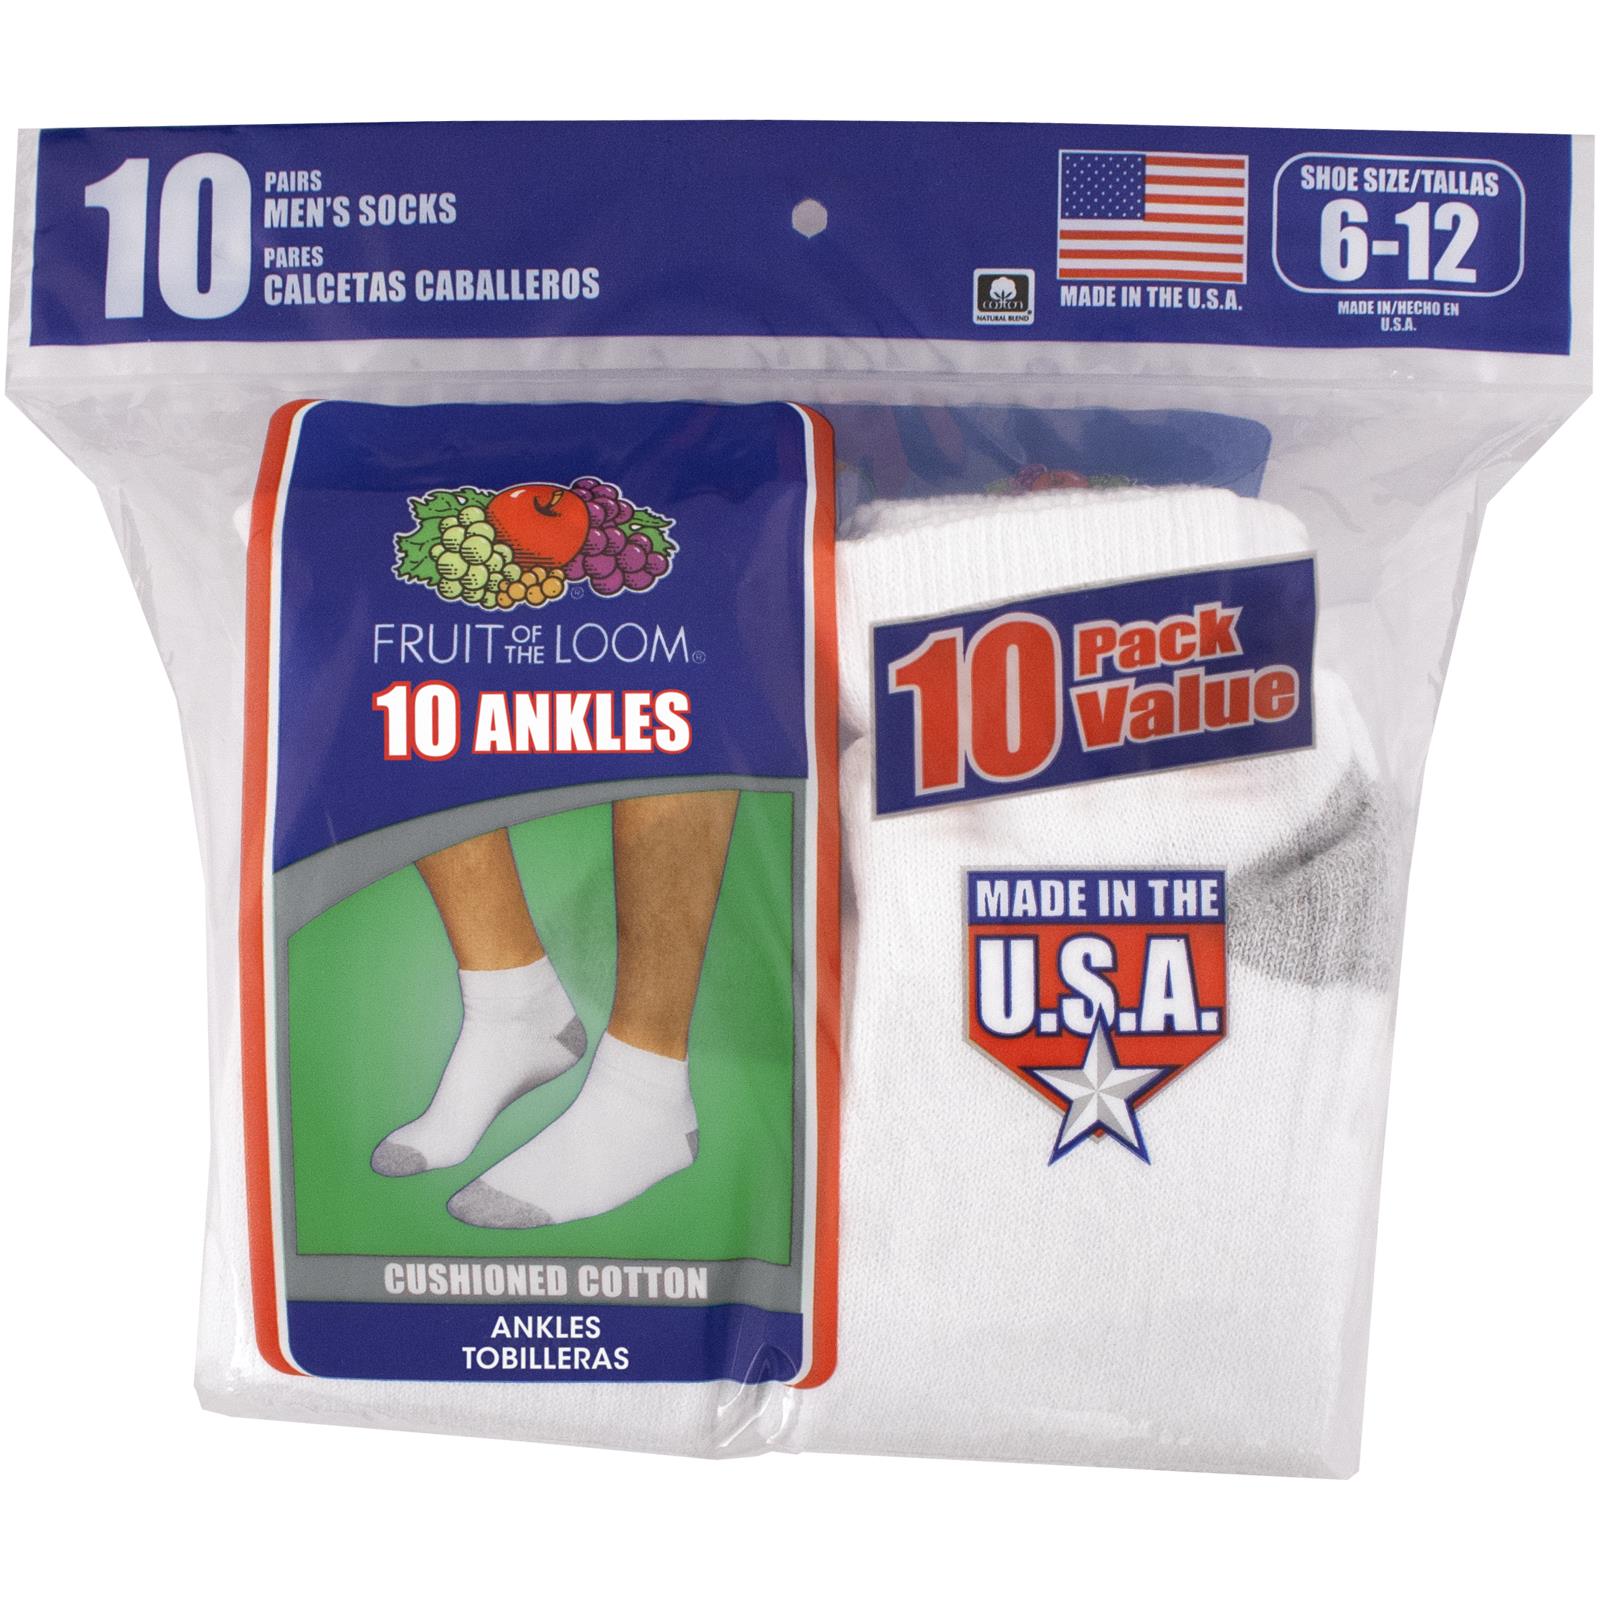 Men's Ankle Socks, 10 Pack - image 2 of 3